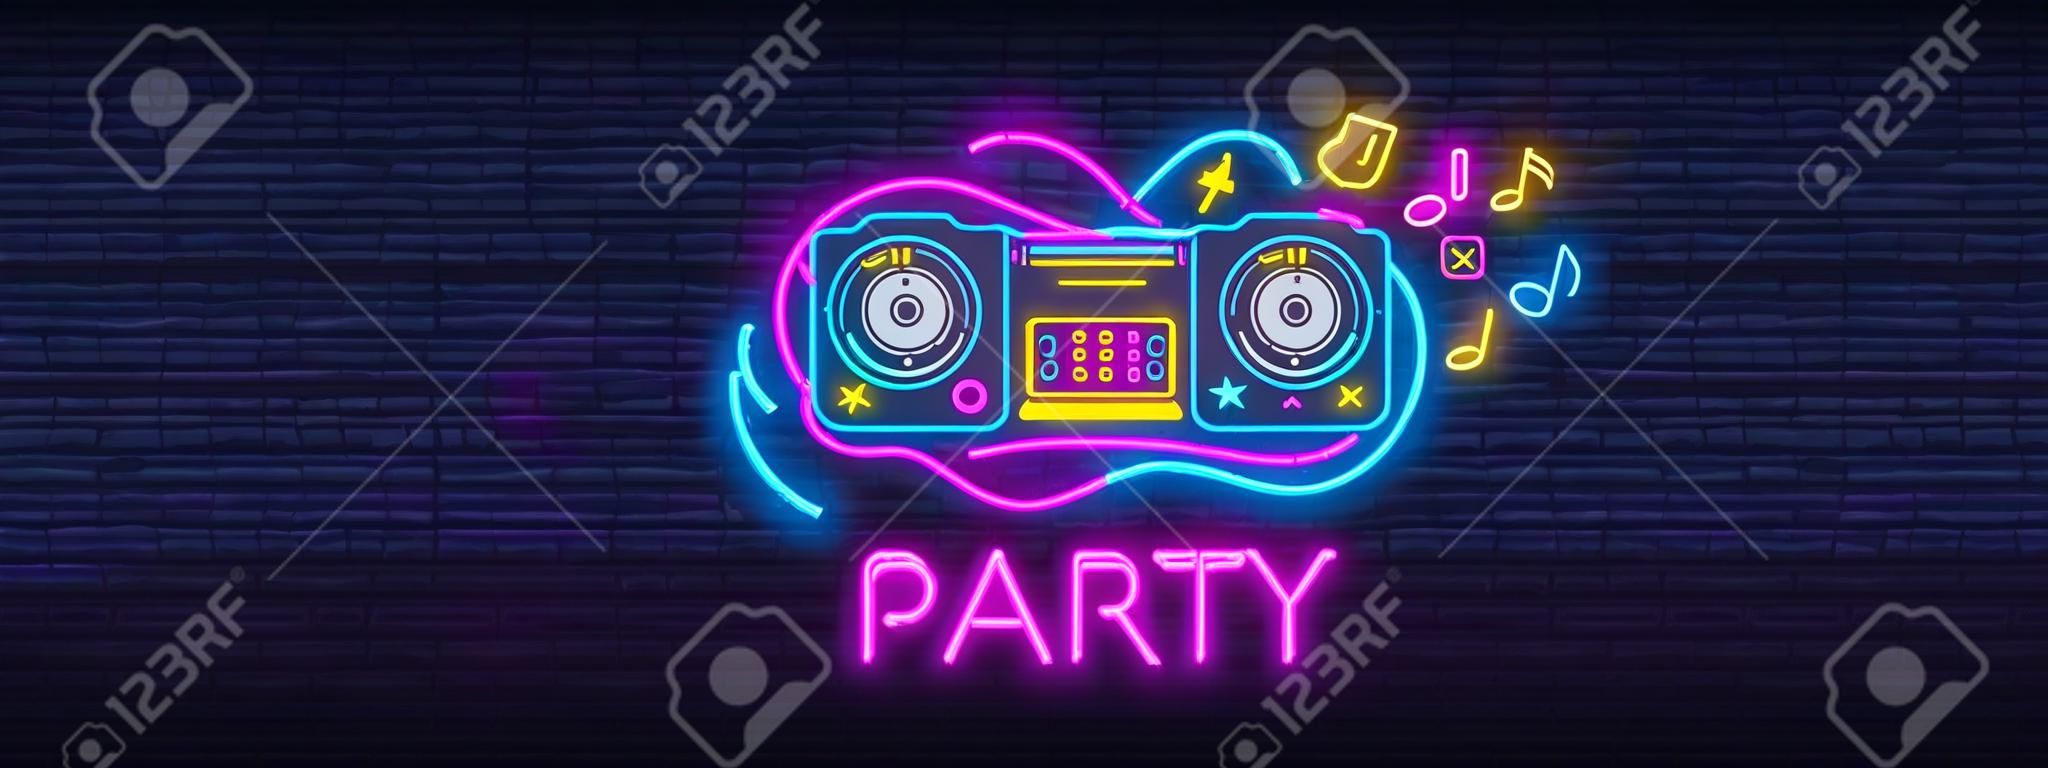 DJ Music Party neon sign collection vector design template. DJ Conceito de música, rádio e concerto ao vivo, cartaz de neon, elemento de design de banner de luz colorido, publicidade brilhante noite. Vector